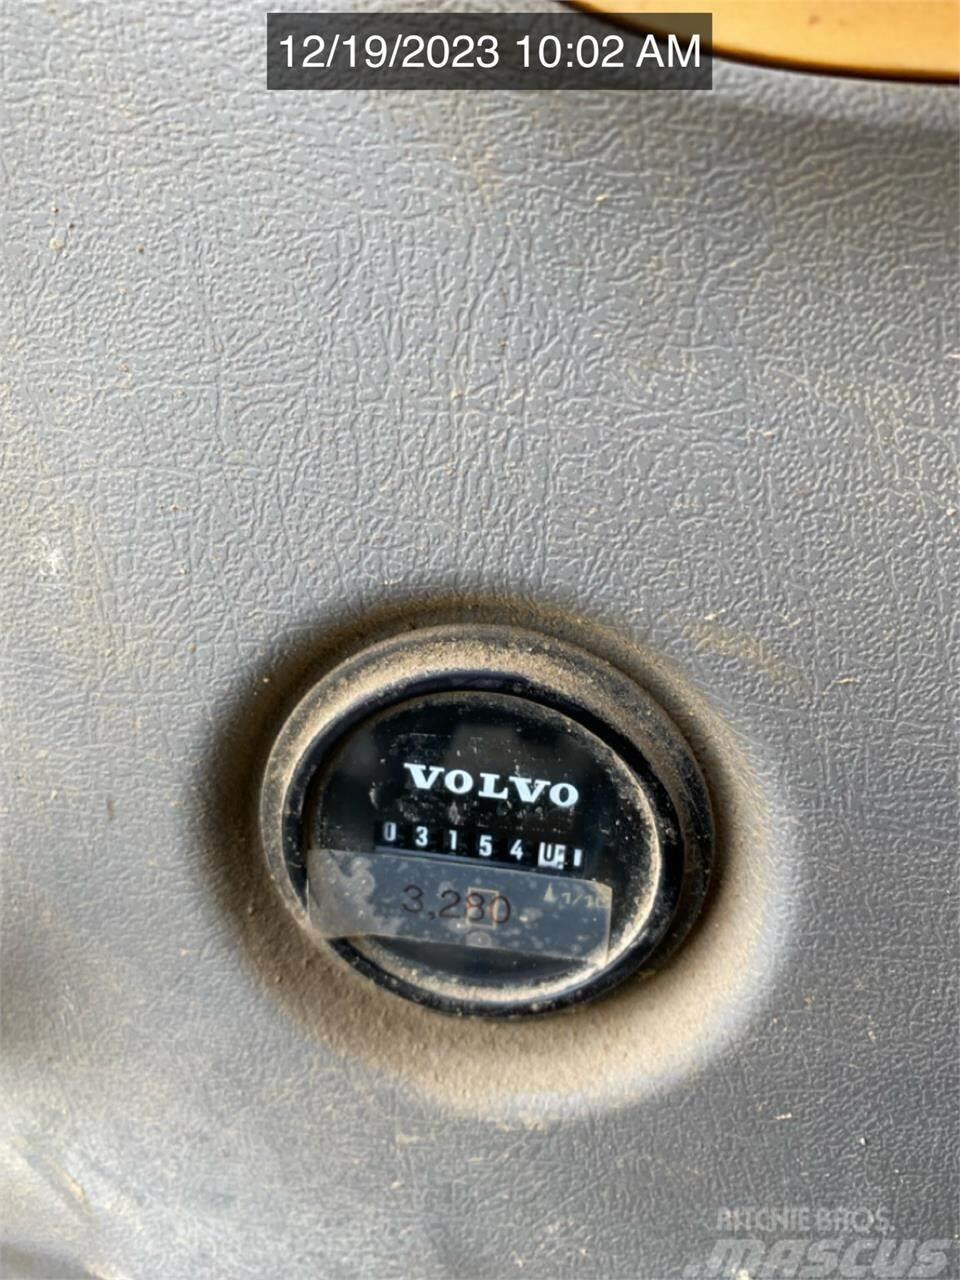 Volvo ECR88D Lánctalpas kotrók